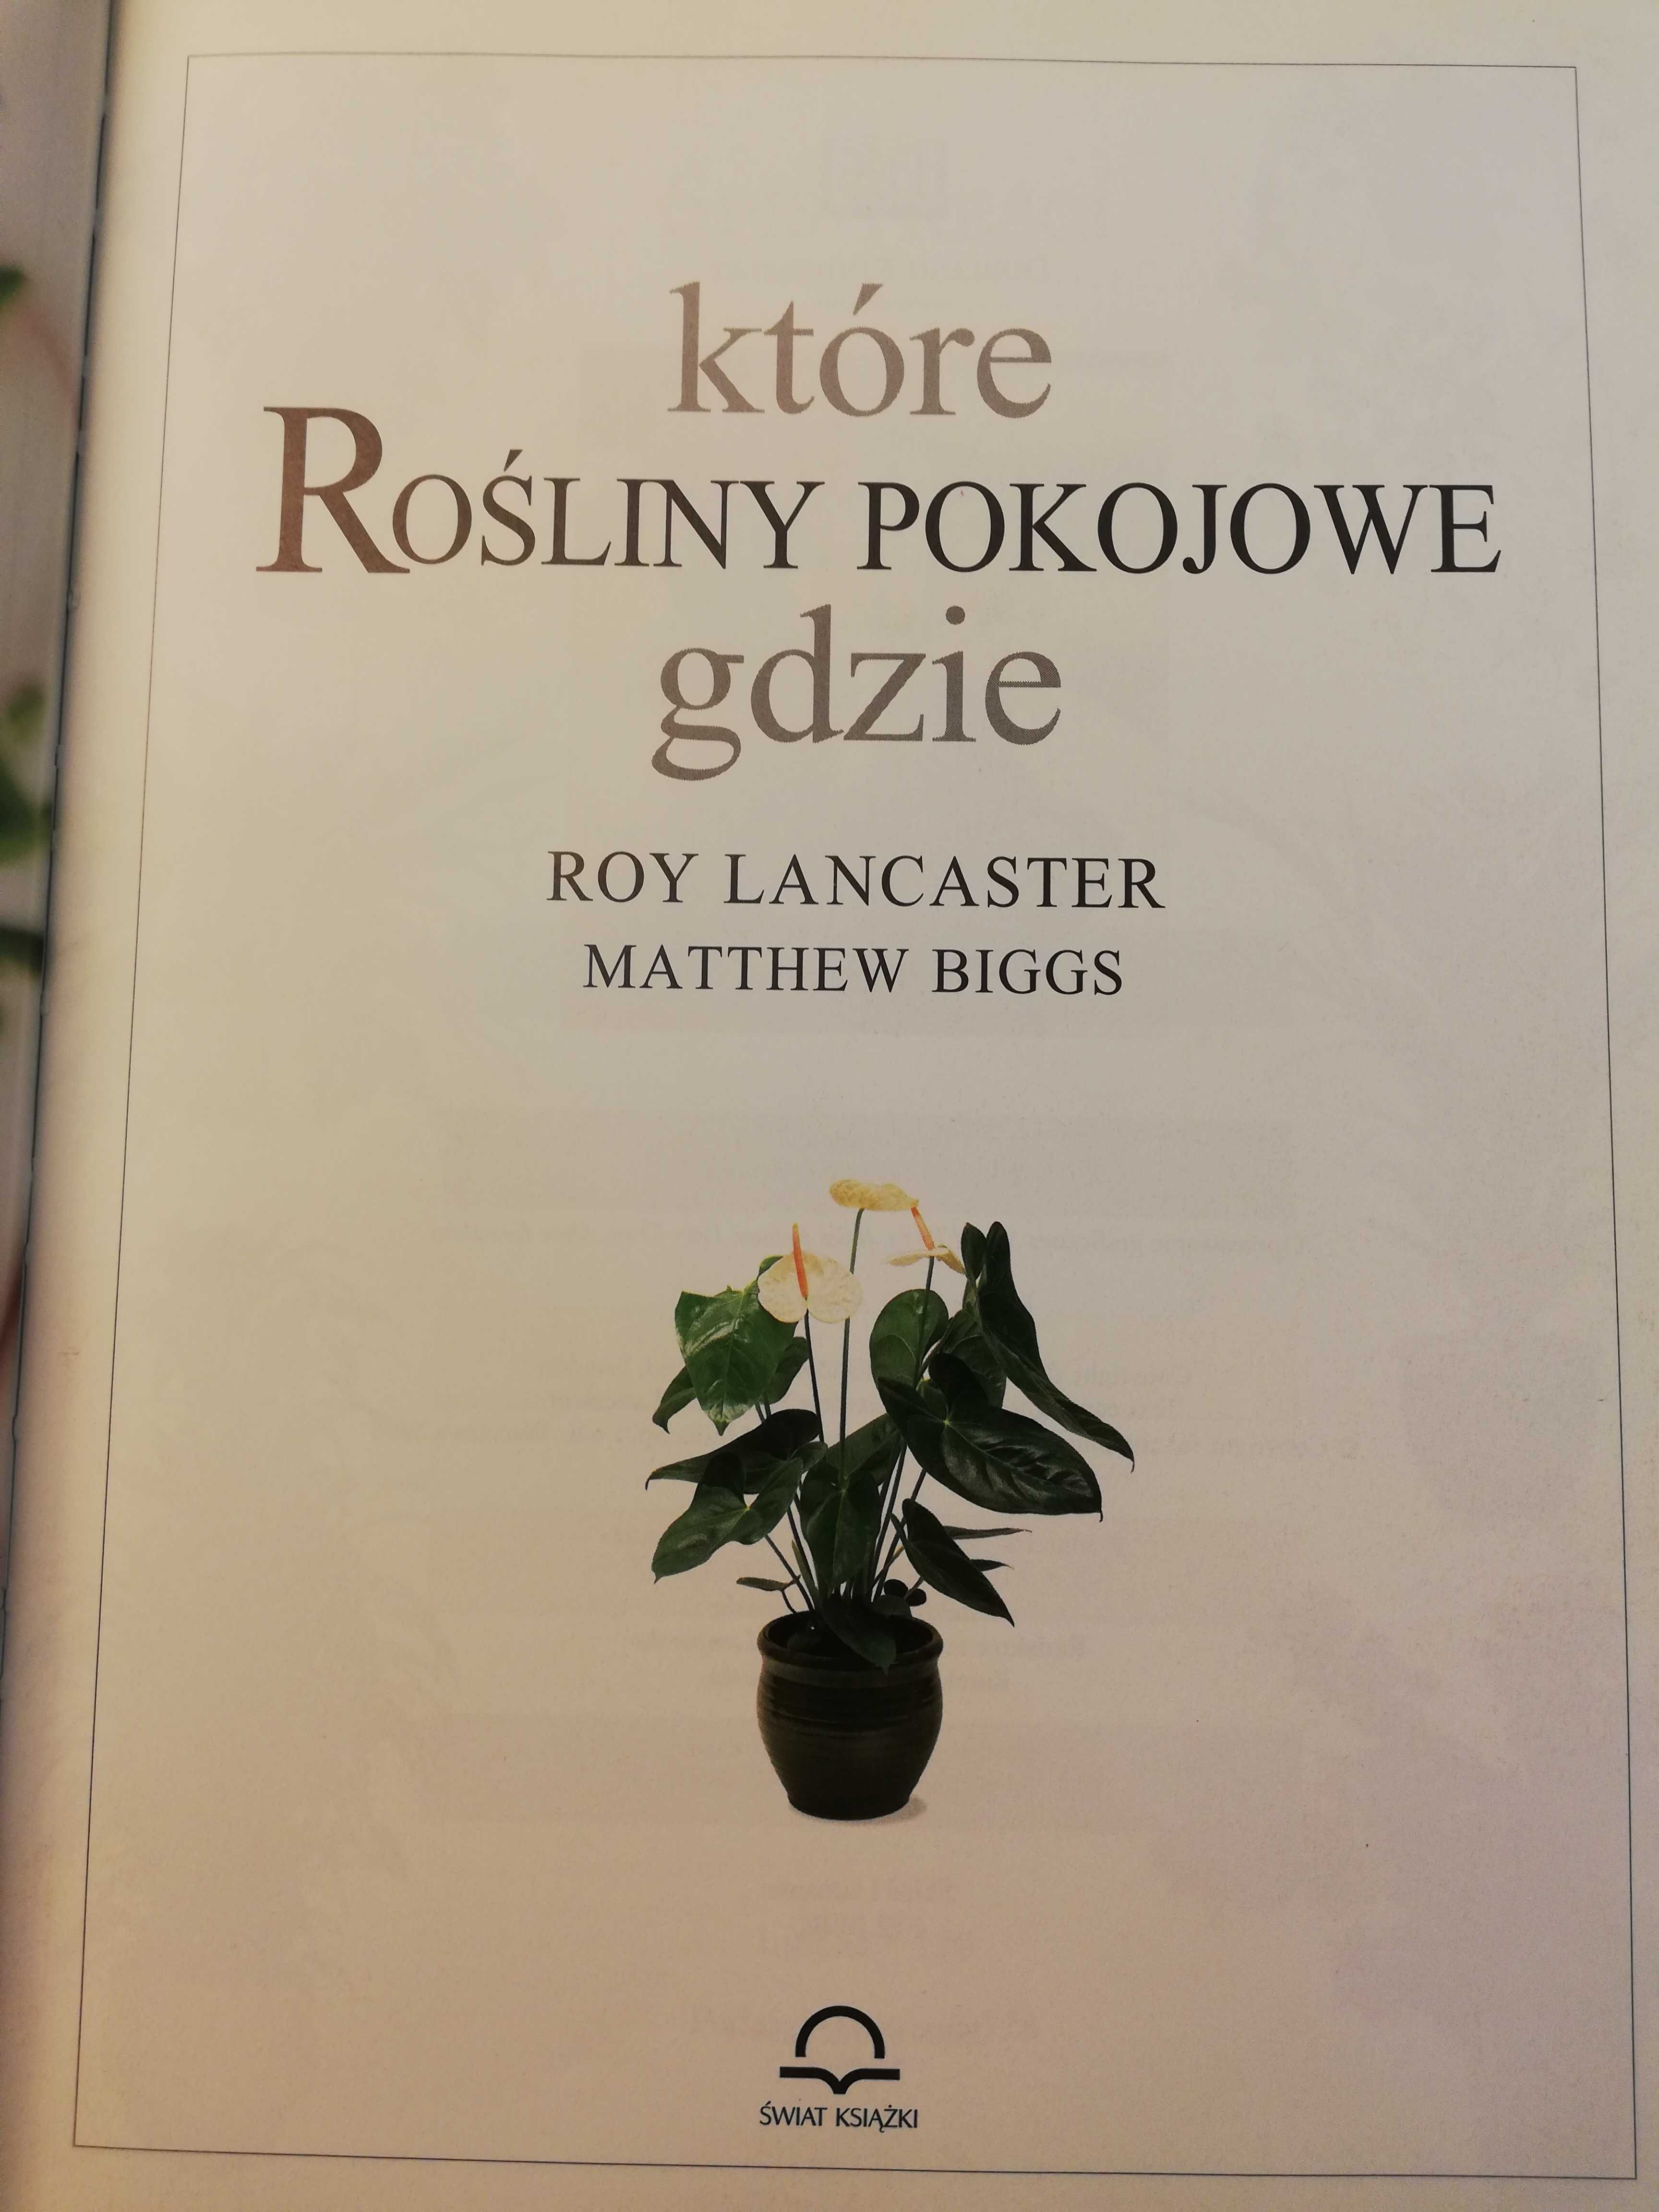 Które rośliny pokojowe gdzie - Roy Lancaster, Matthew Biggs